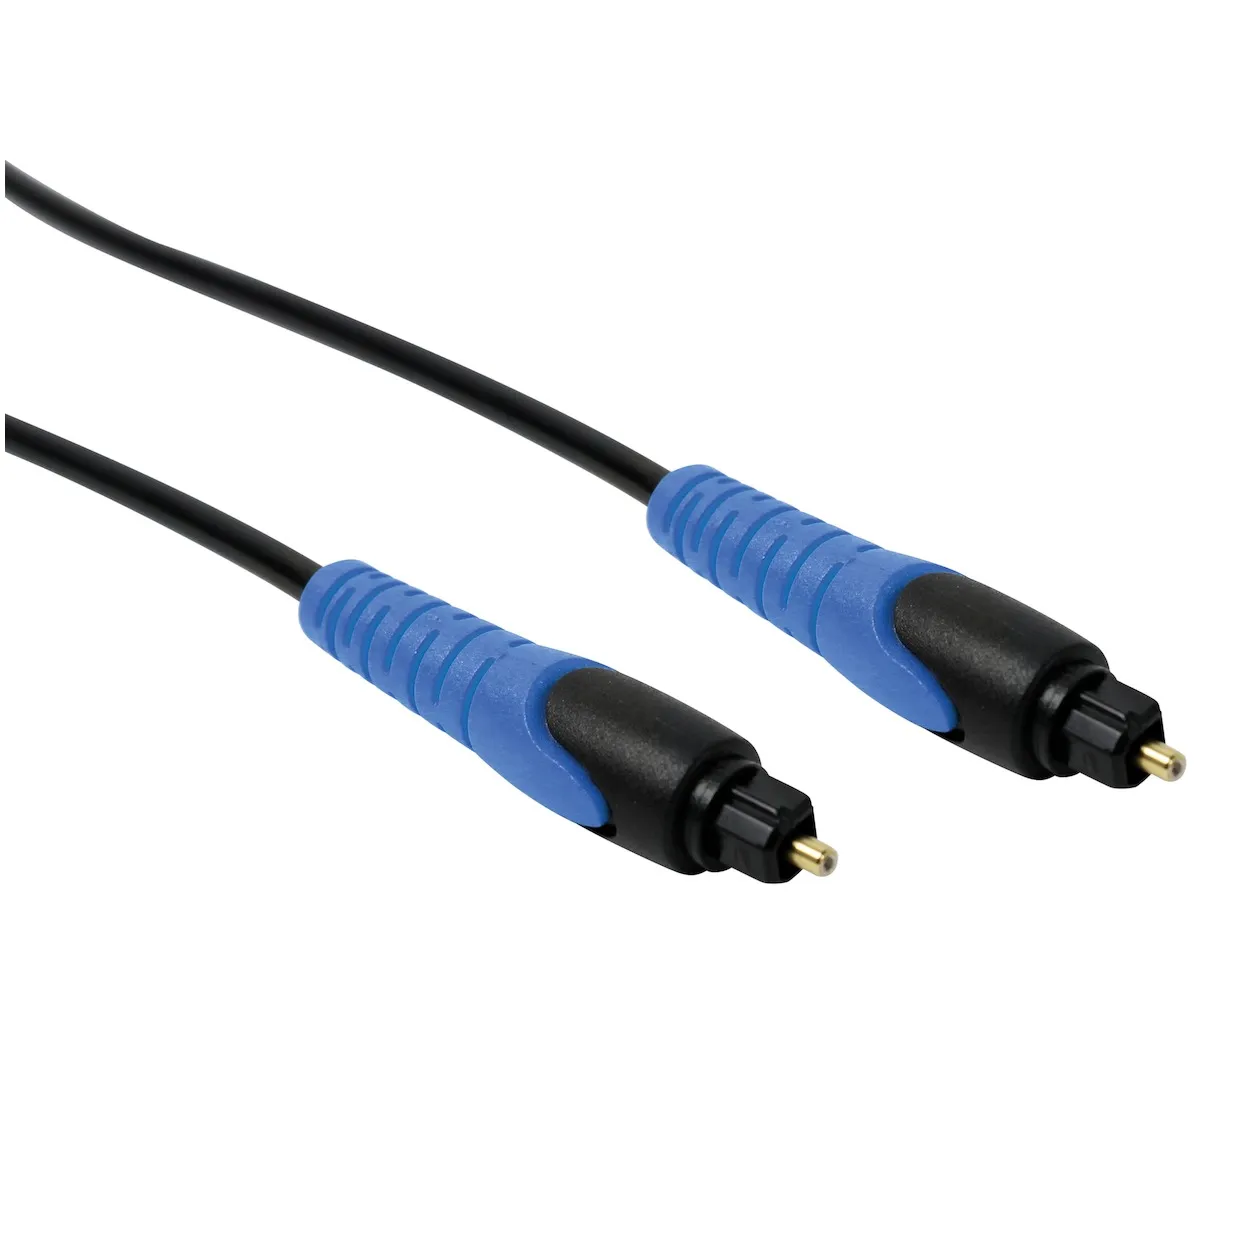 Scanpart Toslink optical audio kabel 1,5m Zwart